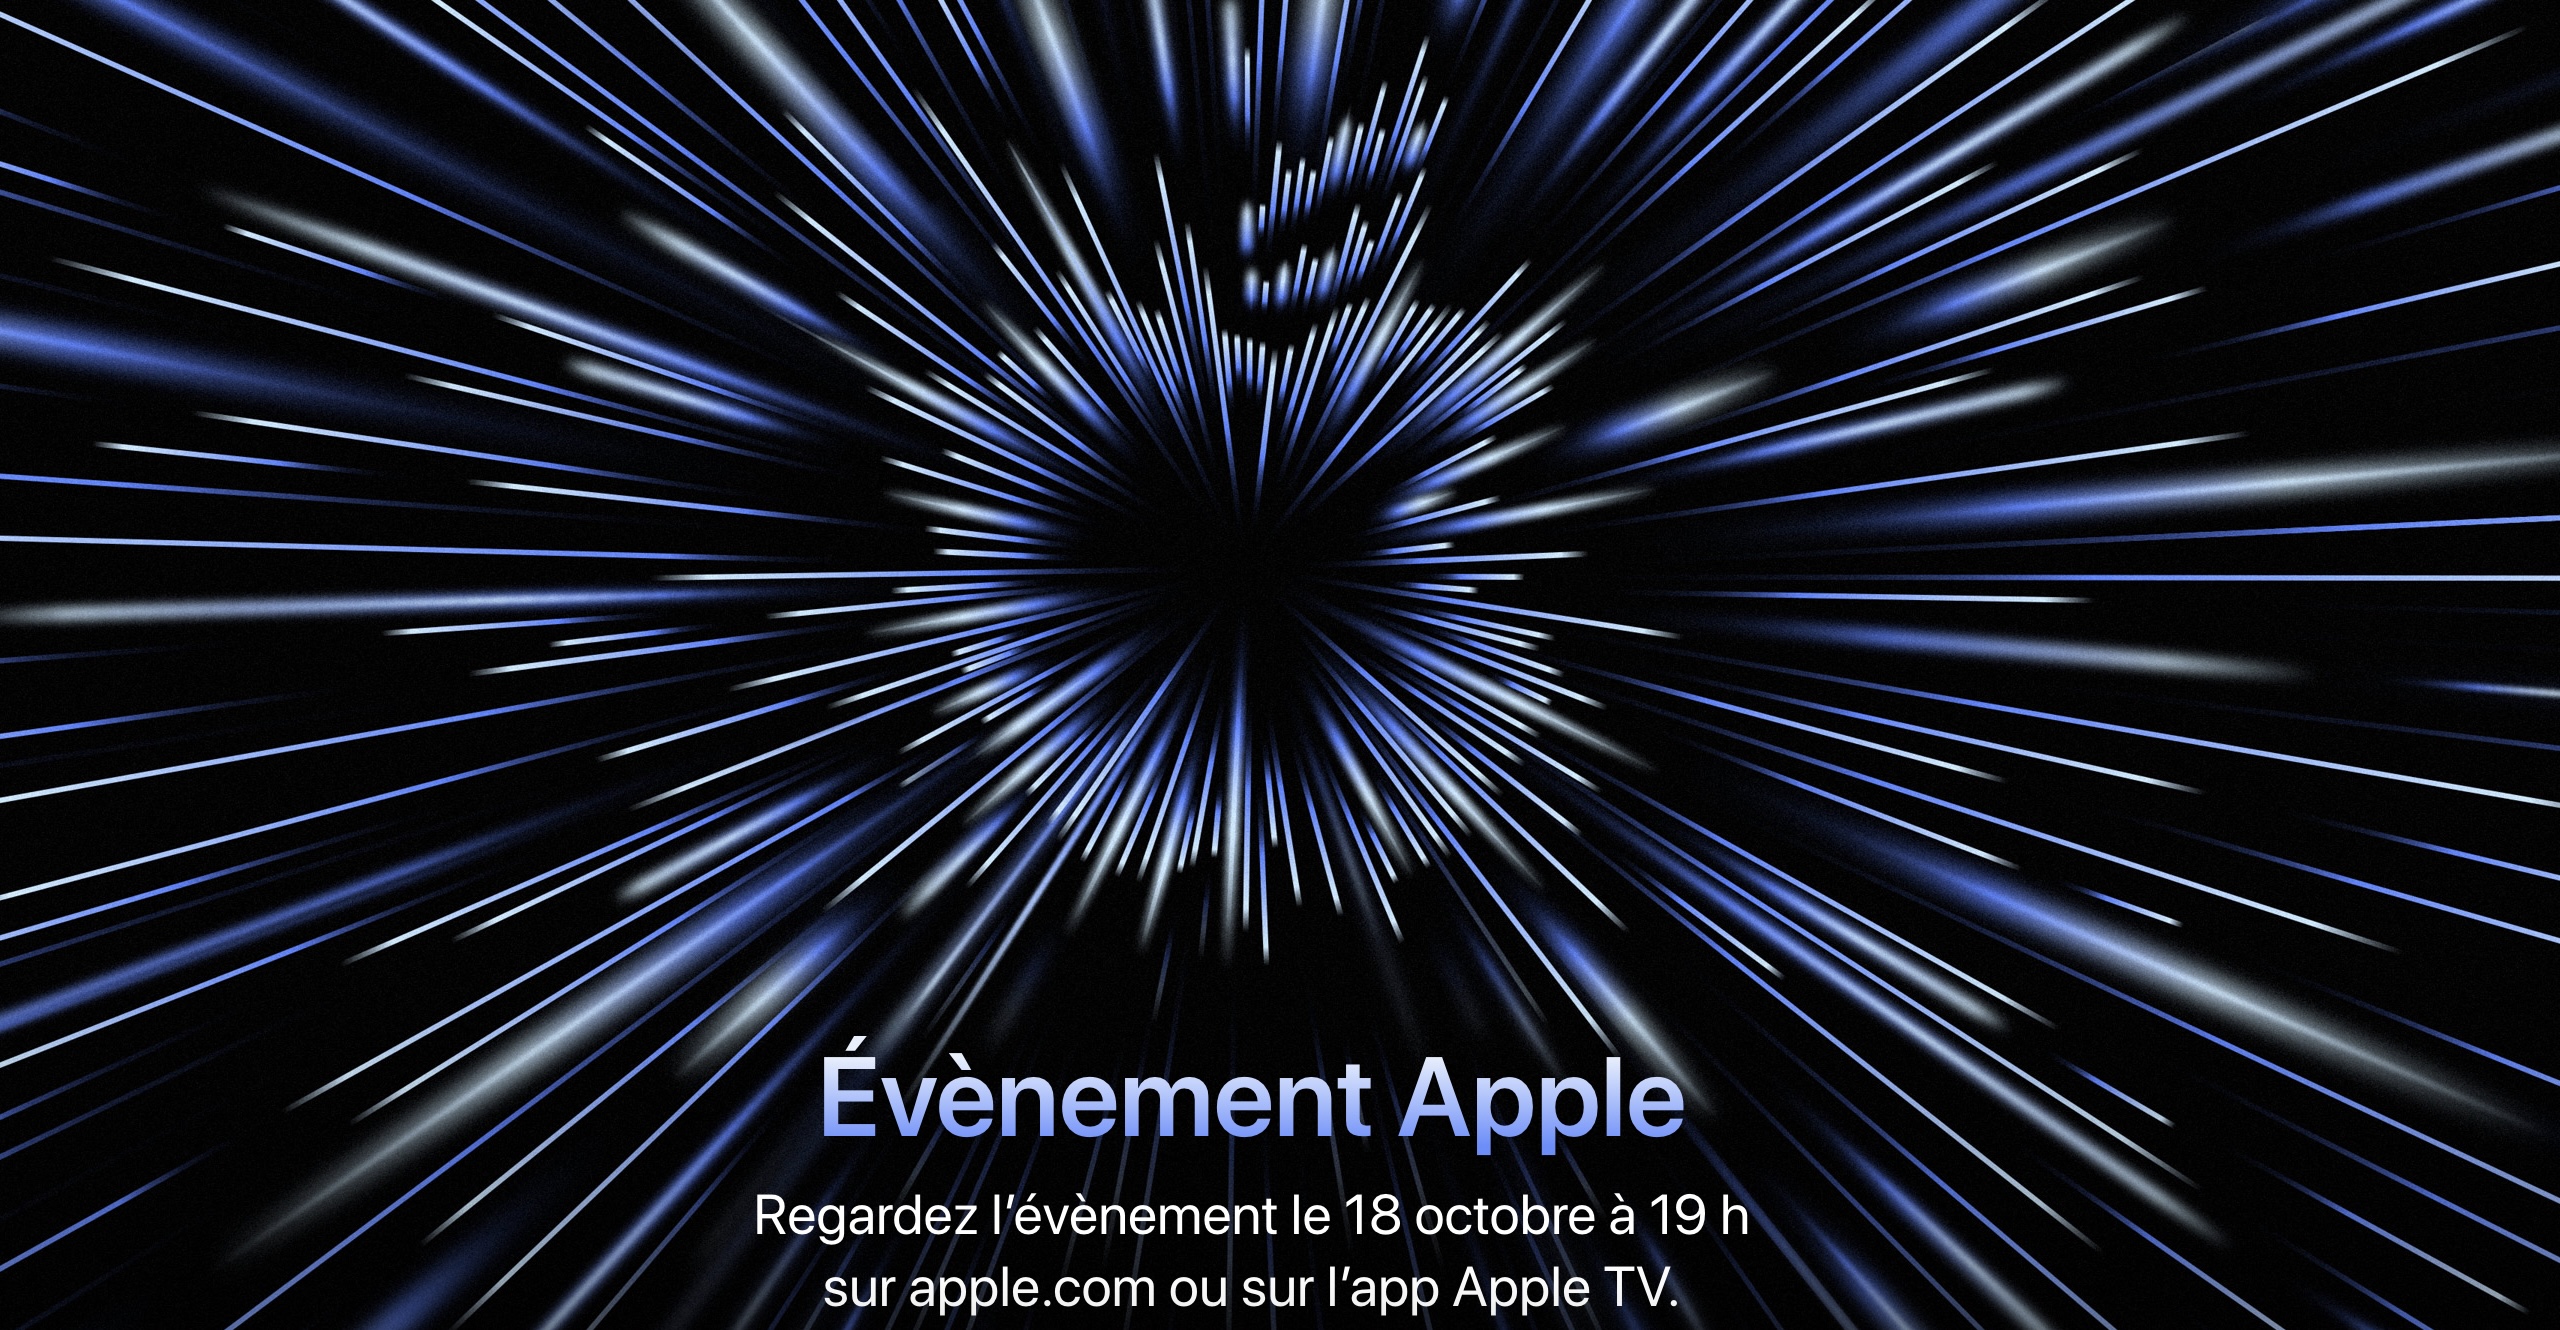 lundi apple surprend evenement unleashed pour 18 octobre